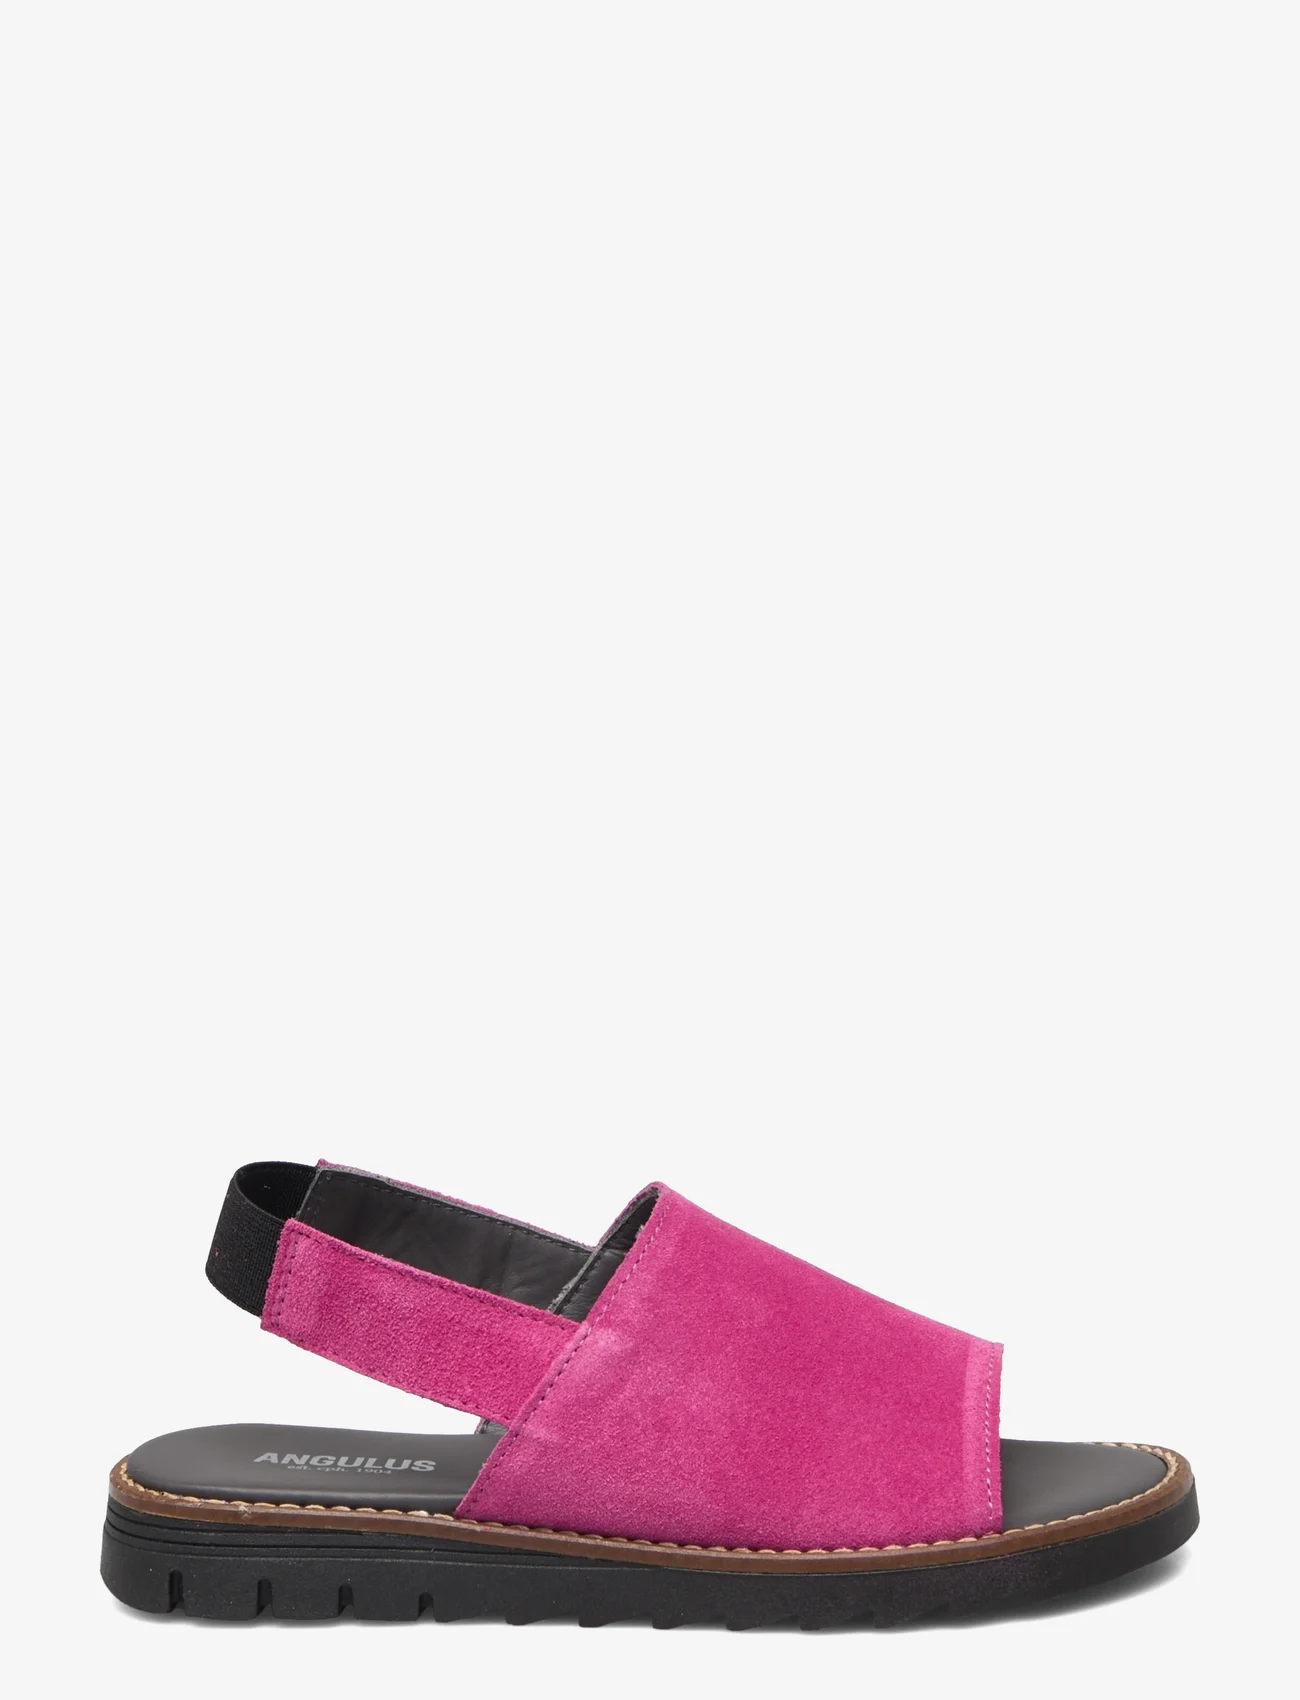 ANGULUS - Sandals - flat - open toe - op - sommerschnäppchen - 1150 pink - 1